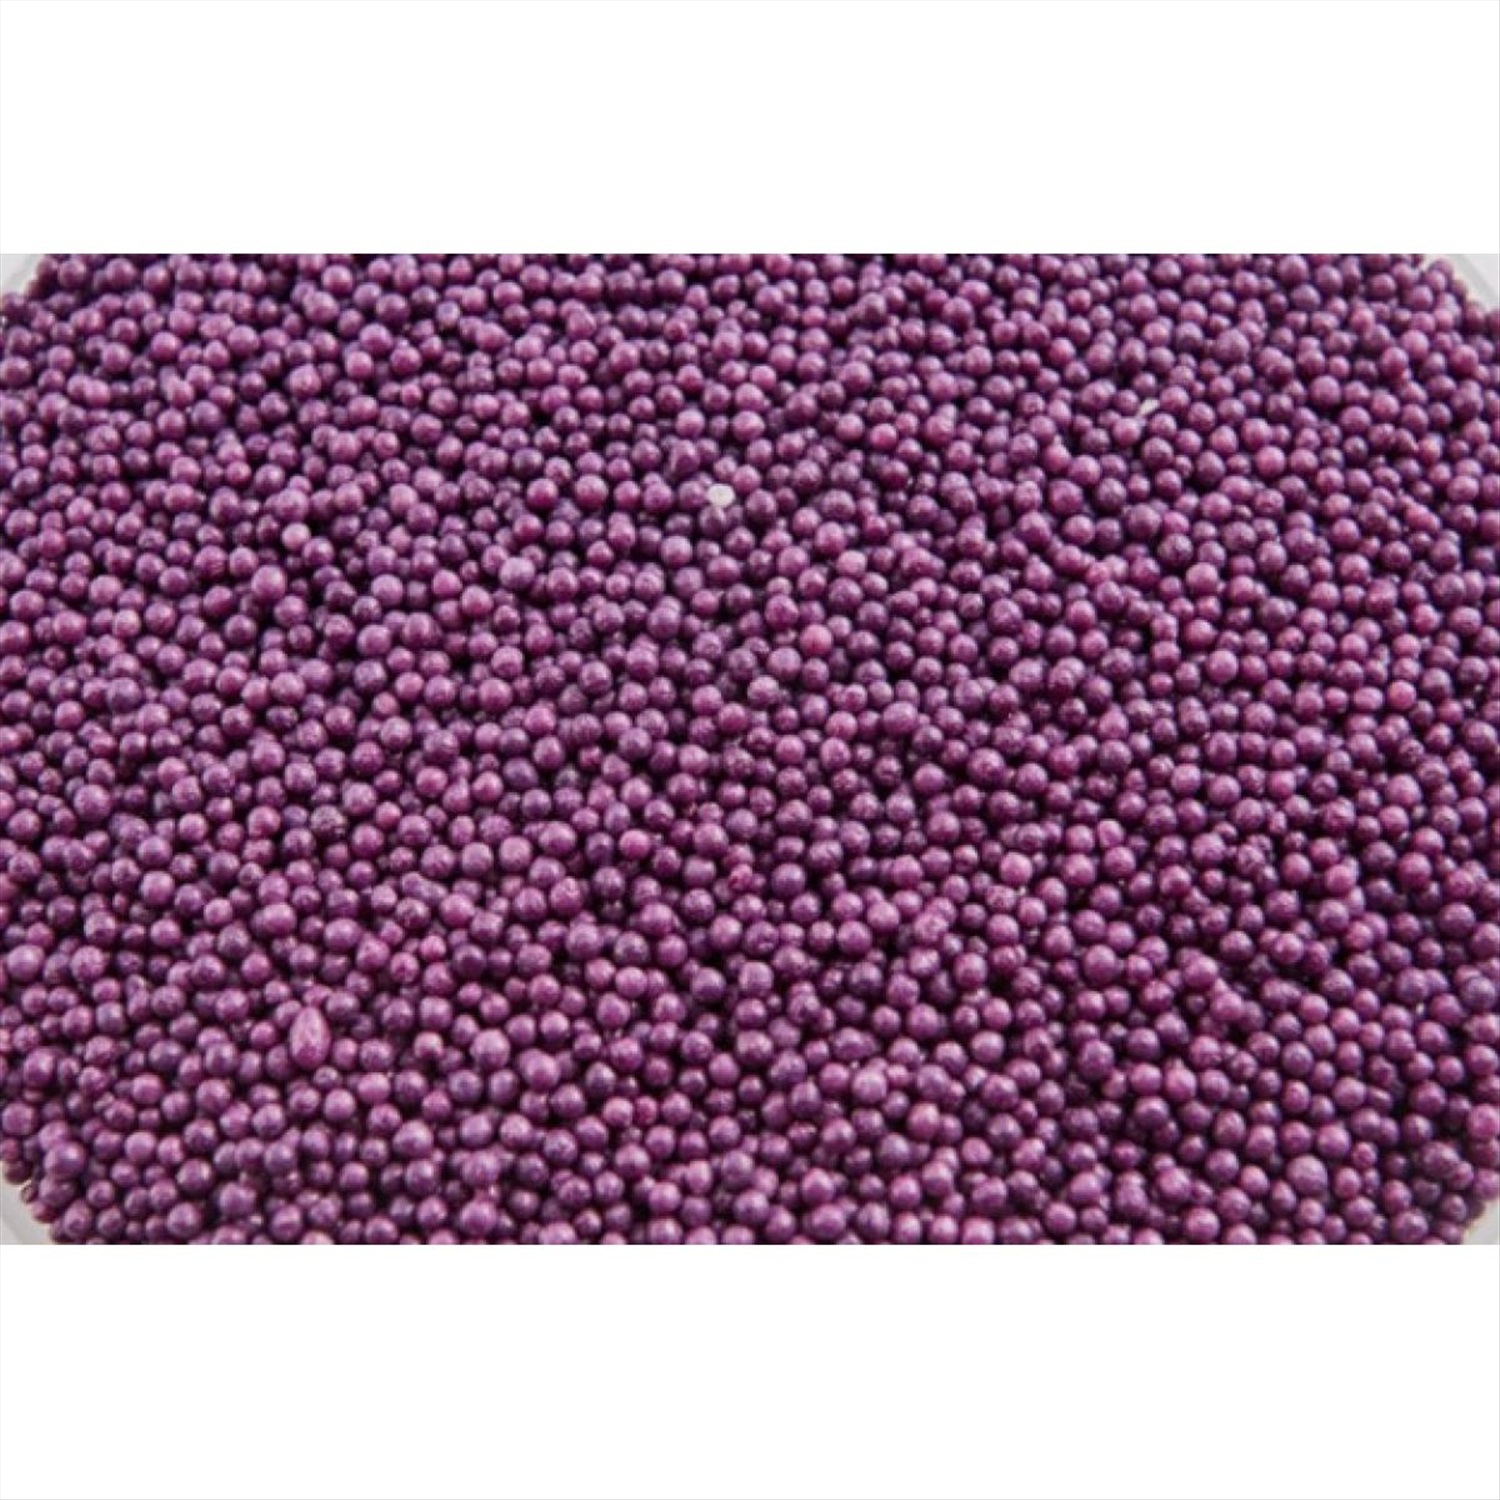 Декор Шарики Темно-фиолетовые 2 мм. Топ декор, 100 г